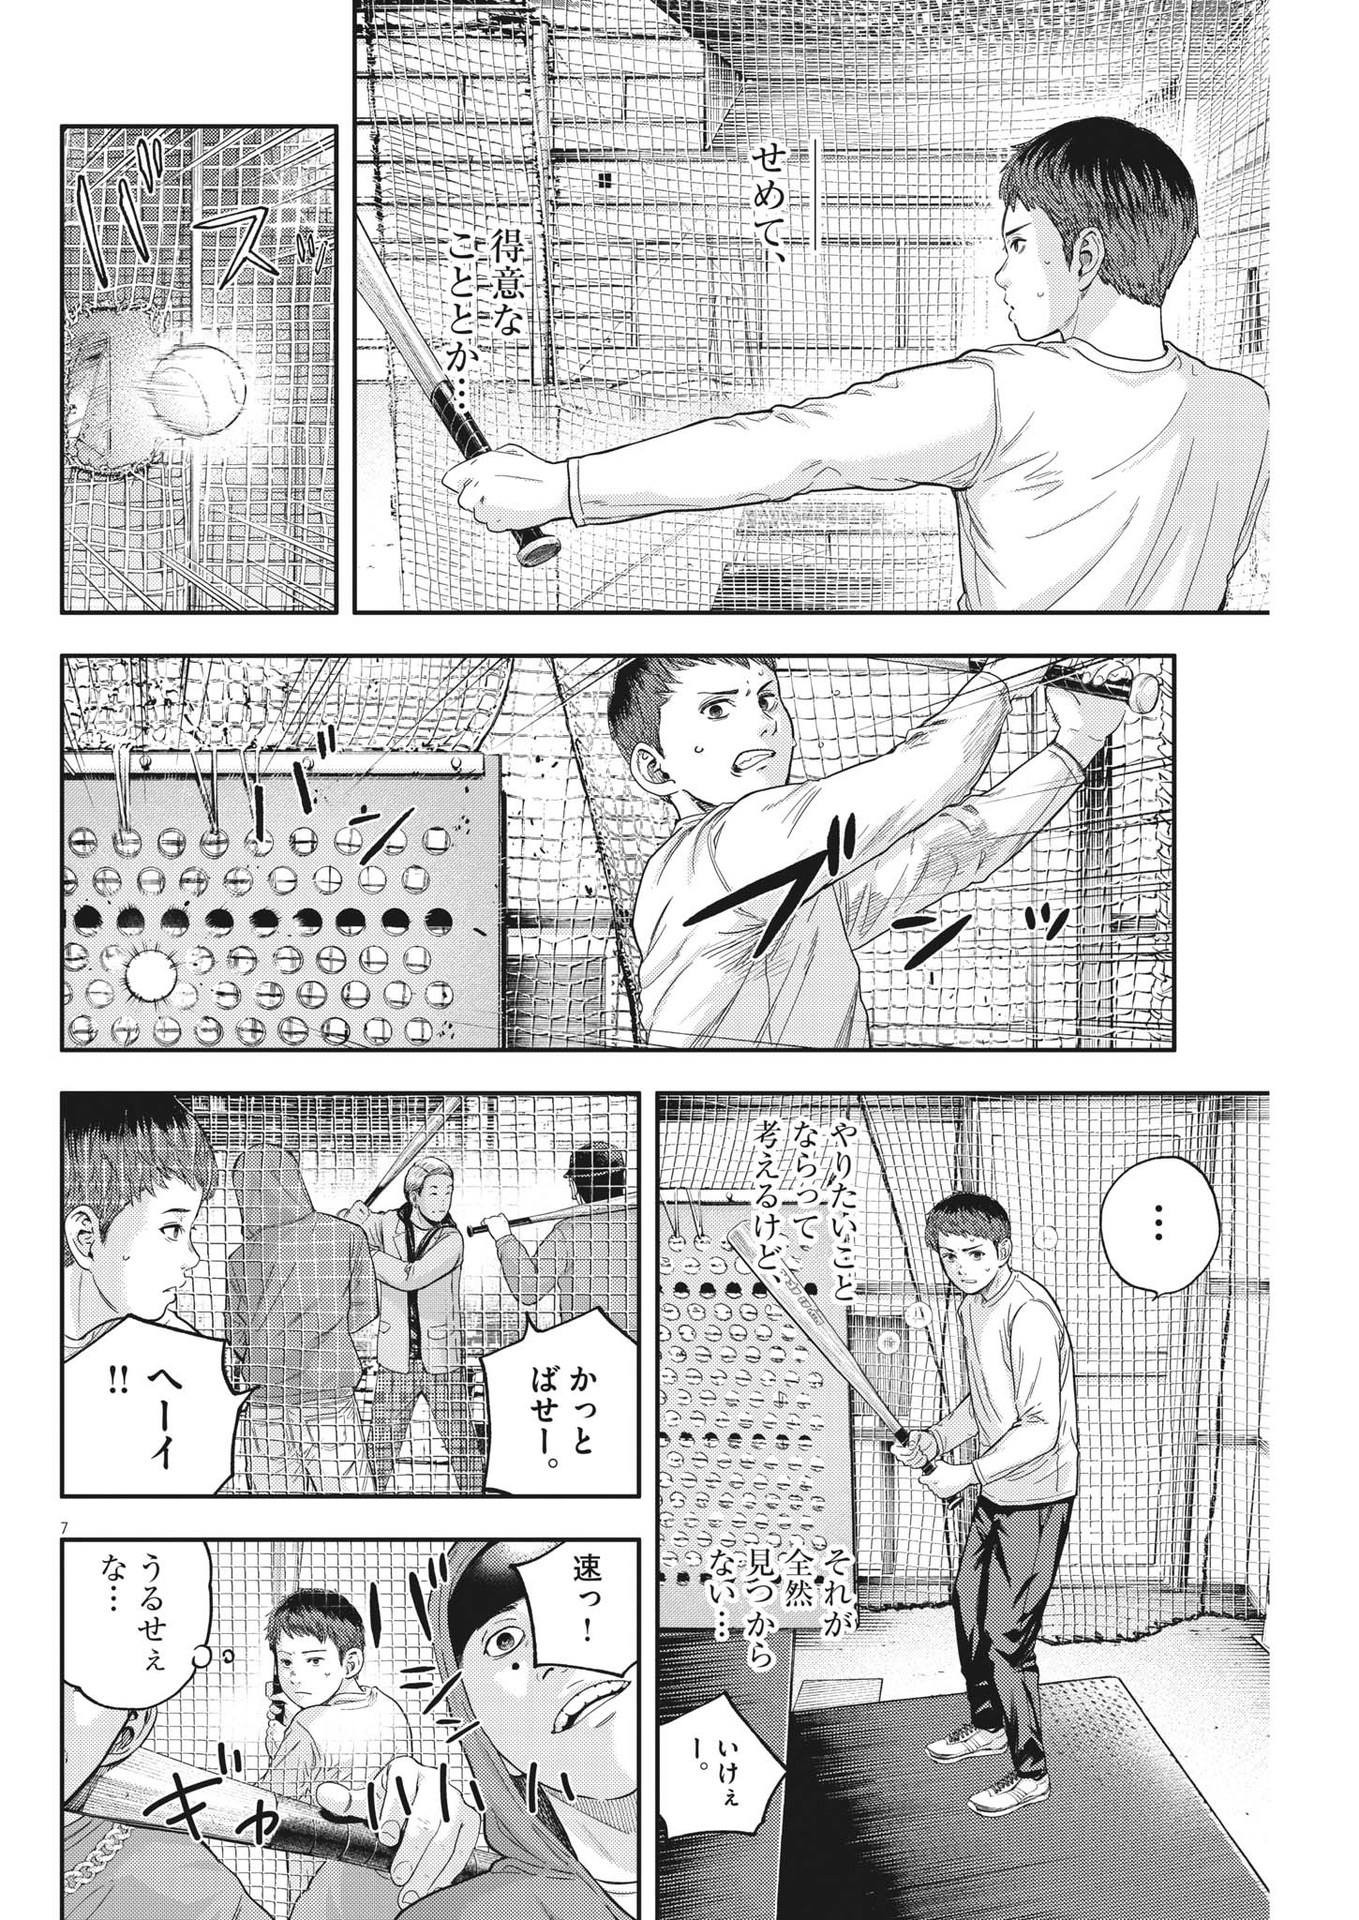 Yumenashi-sensei no Shinroshidou - Chapter 19 - Page 7